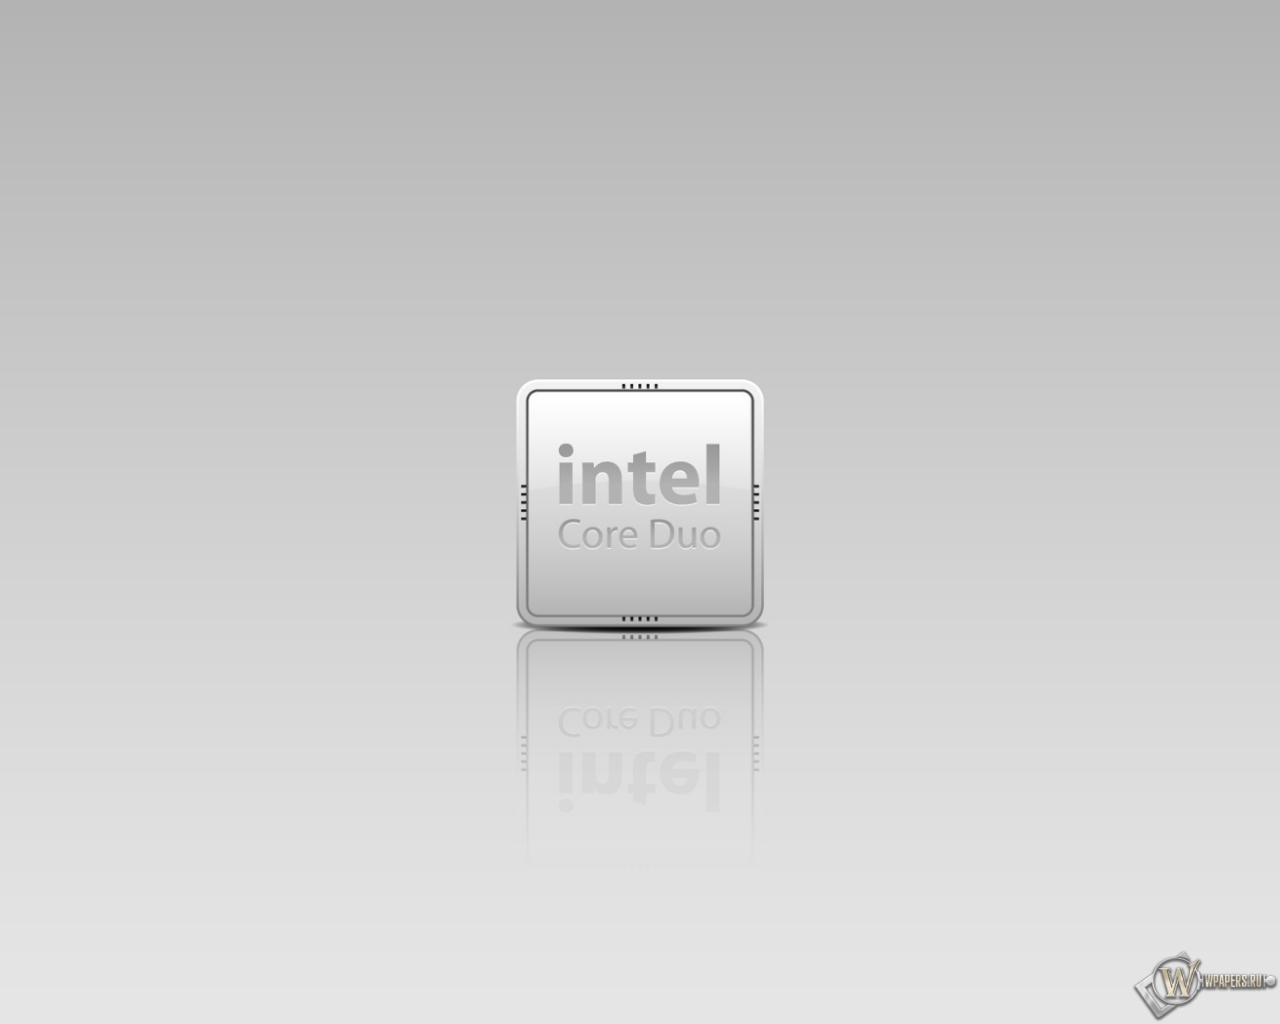 Intel 1280x1024